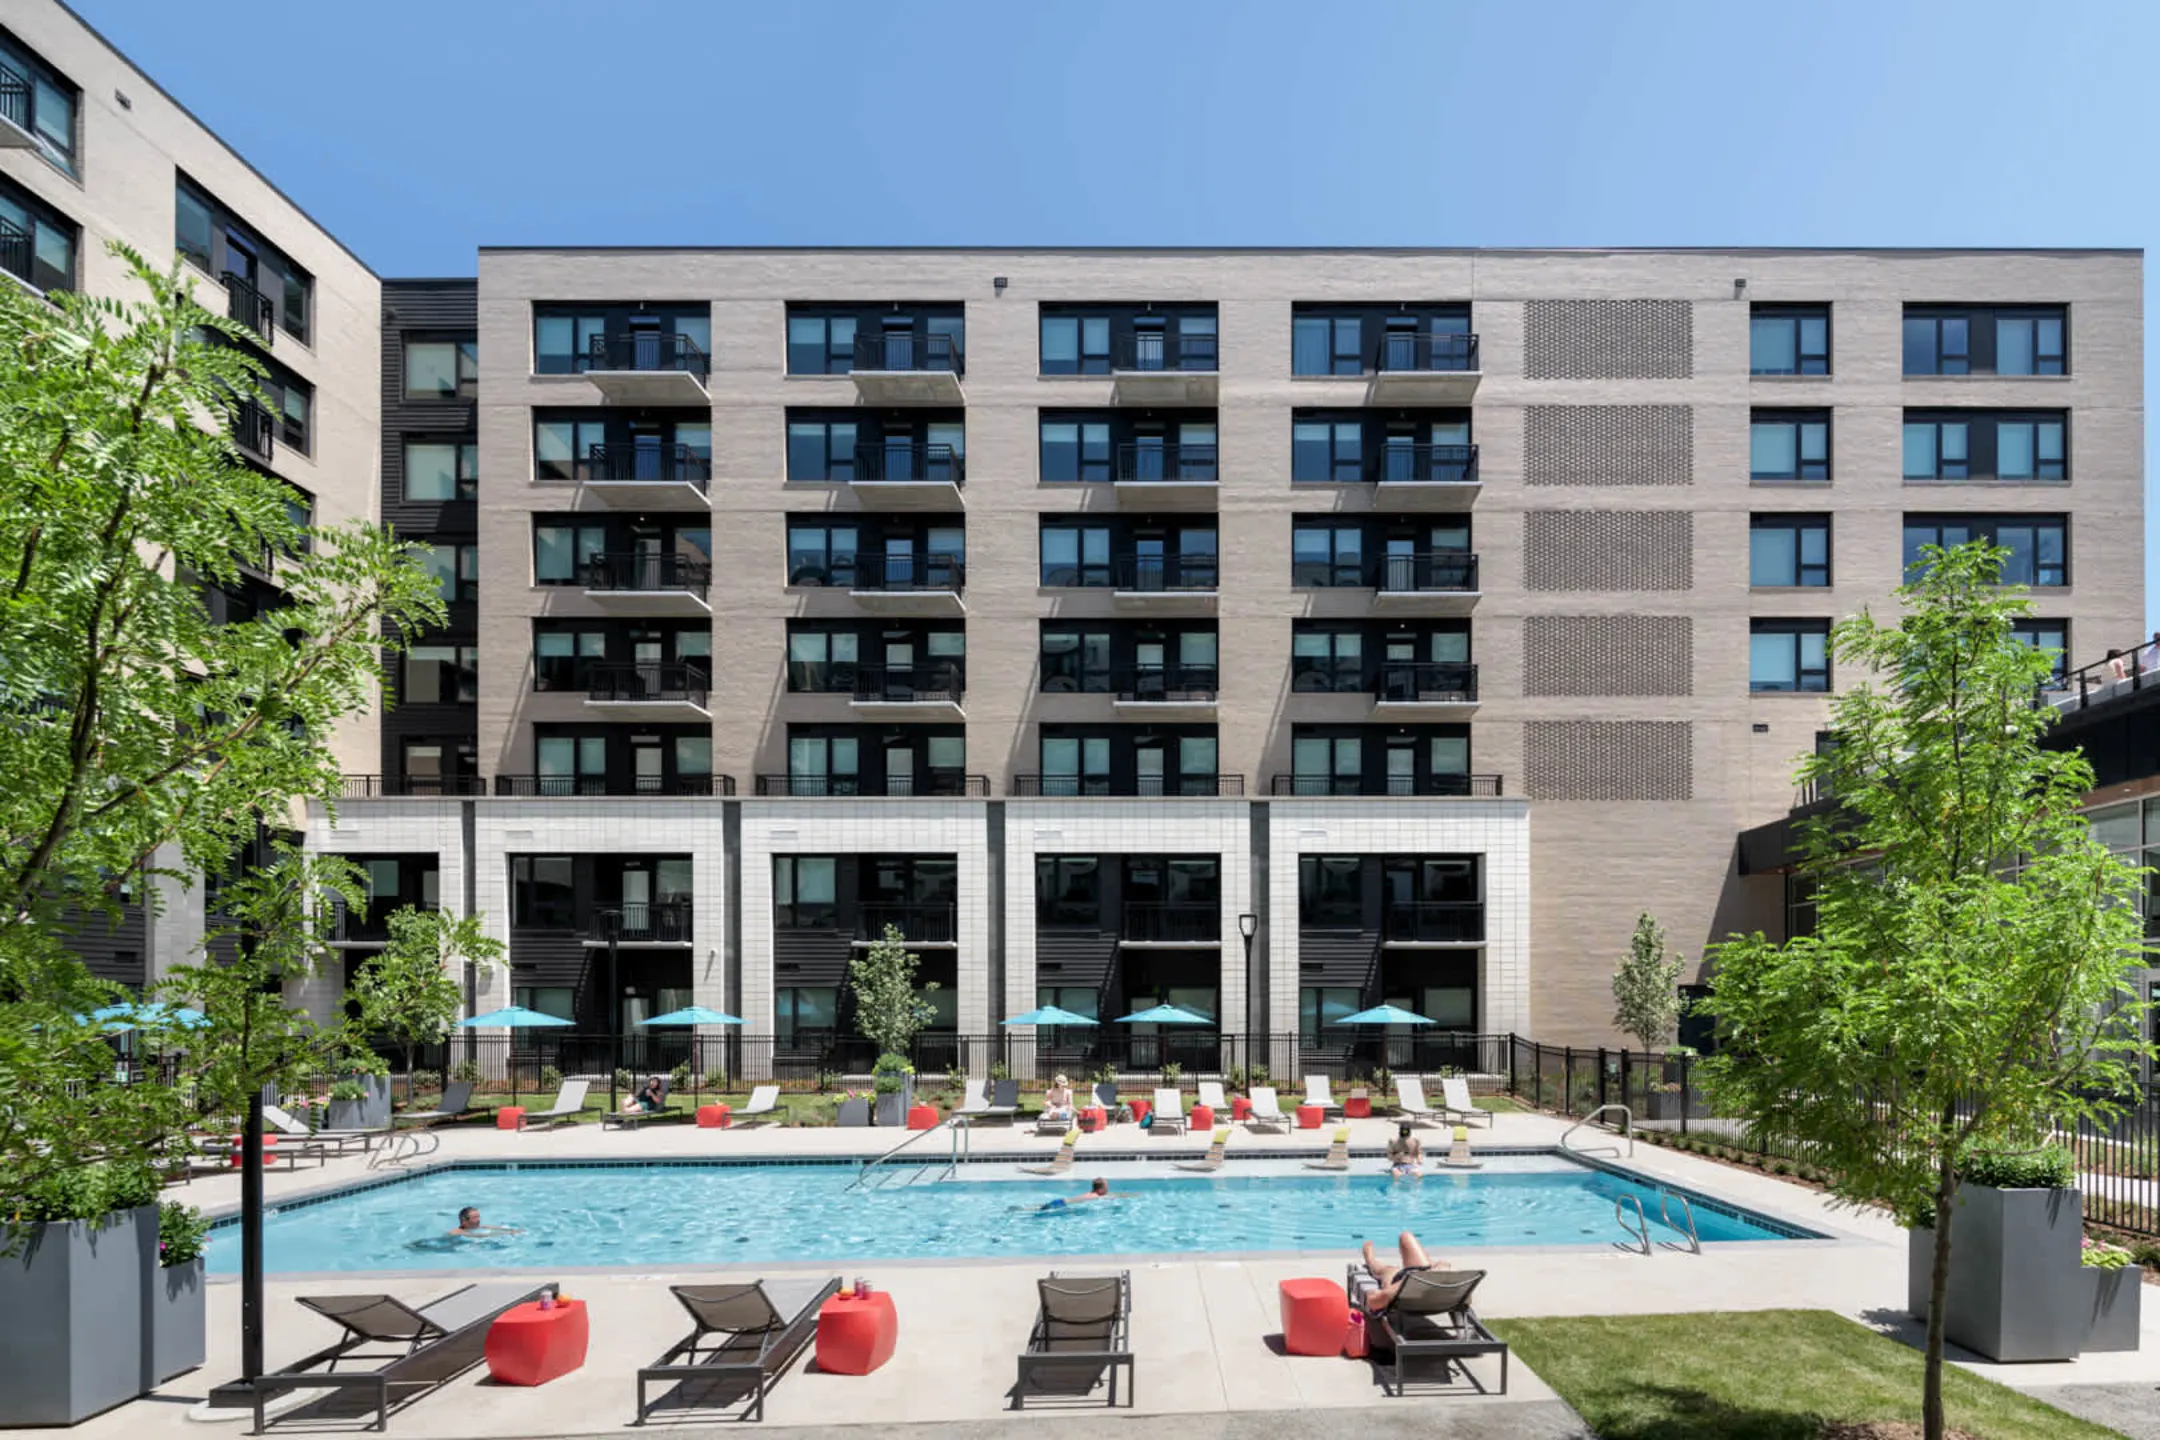 Pool - Milo Apartments - Denver, CO